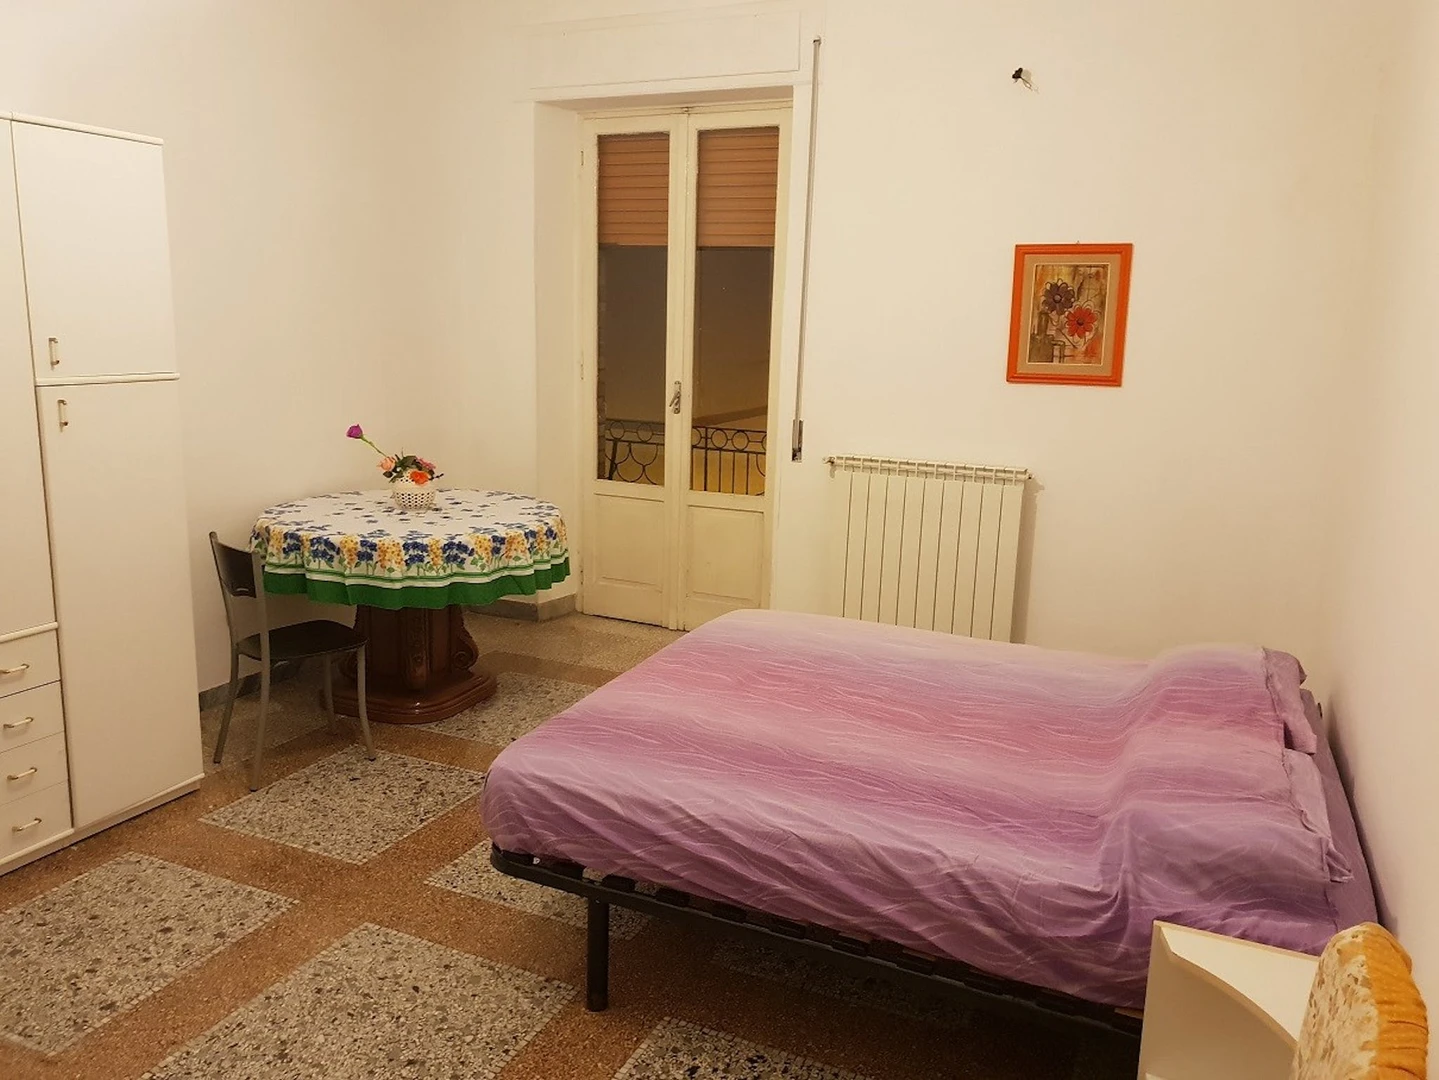 Foggia içinde aydınlık özel oda